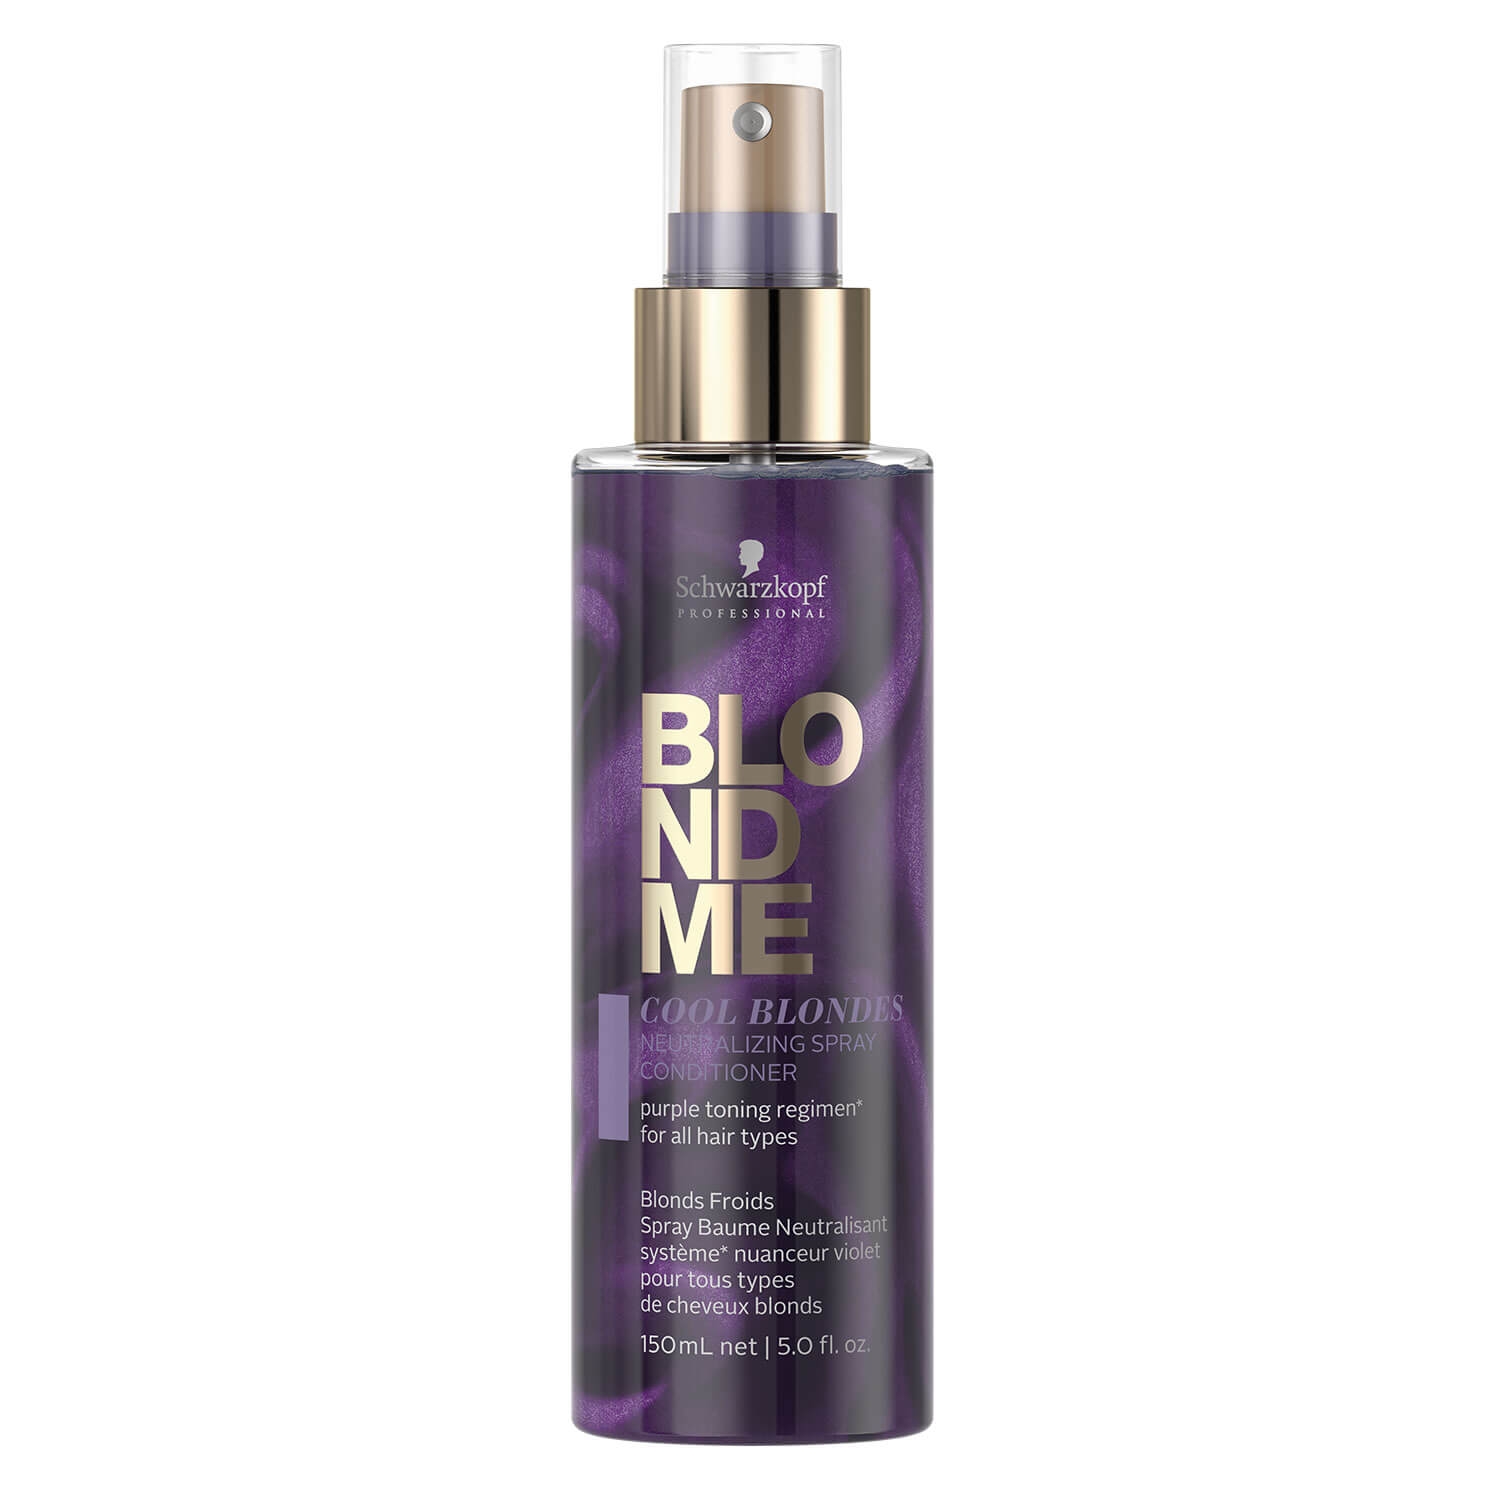 Produktbild von Blondme - Cool Blondes Neutralizing Spray Conditioner